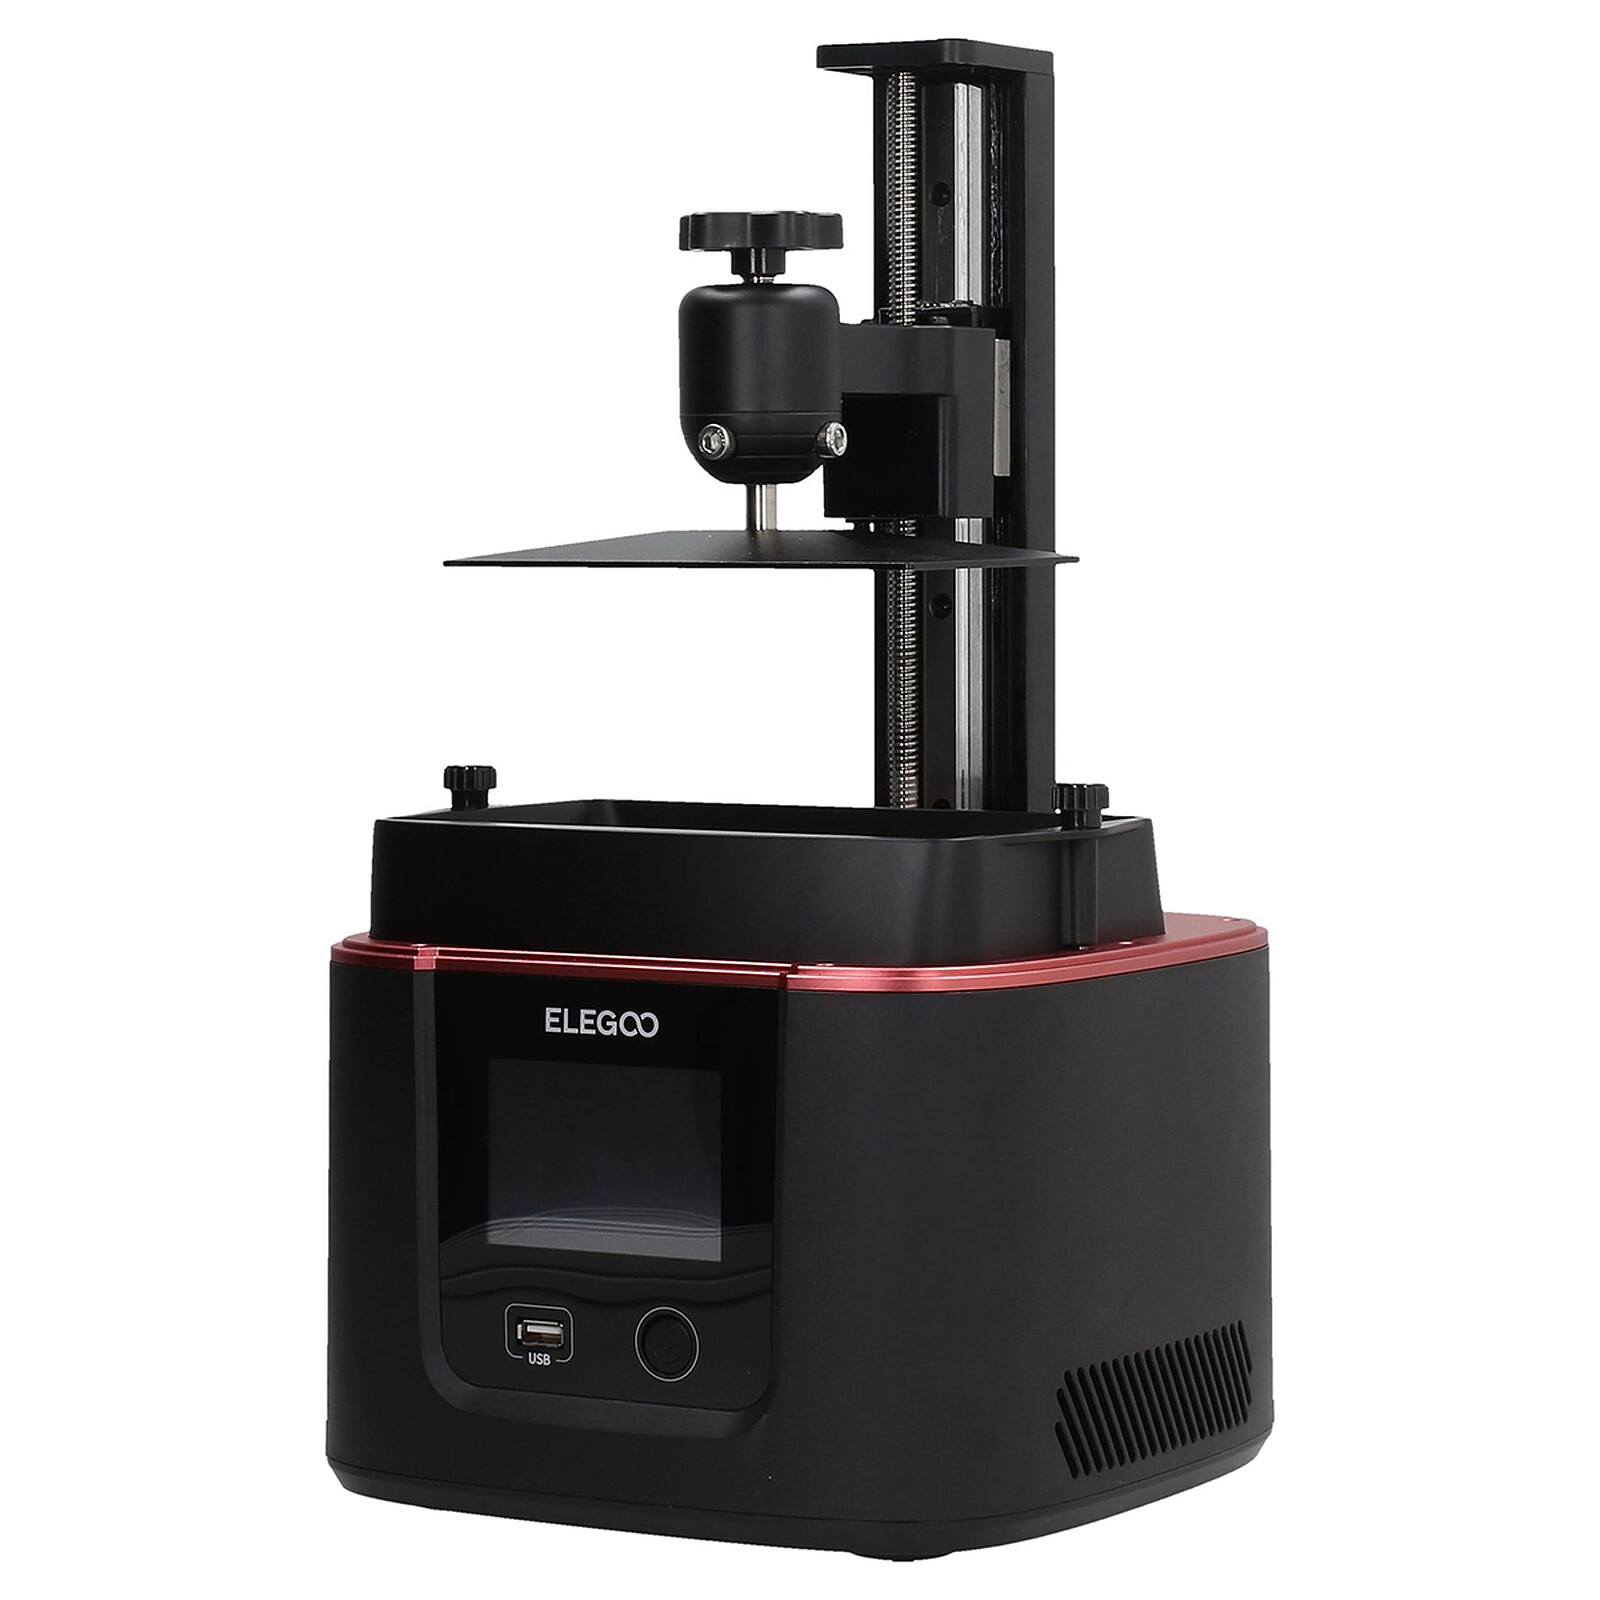 Elegoo Mars Pro 2 - Imprimante 3D - Garantie 3 ans LDLC